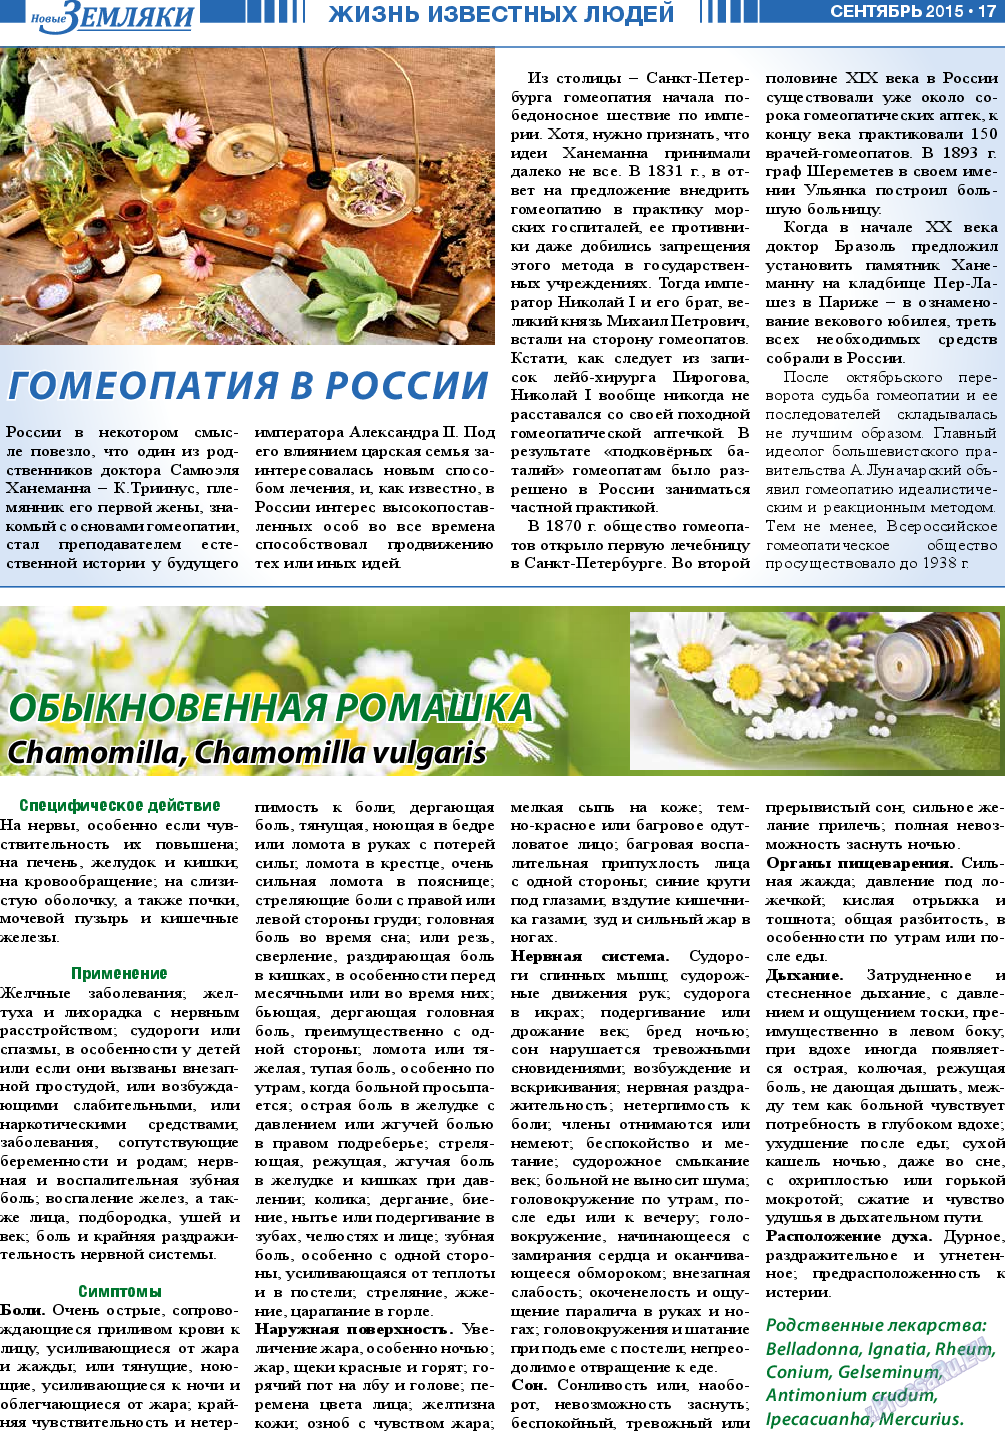 Новые Земляки, газета. 2015 №9 стр.17